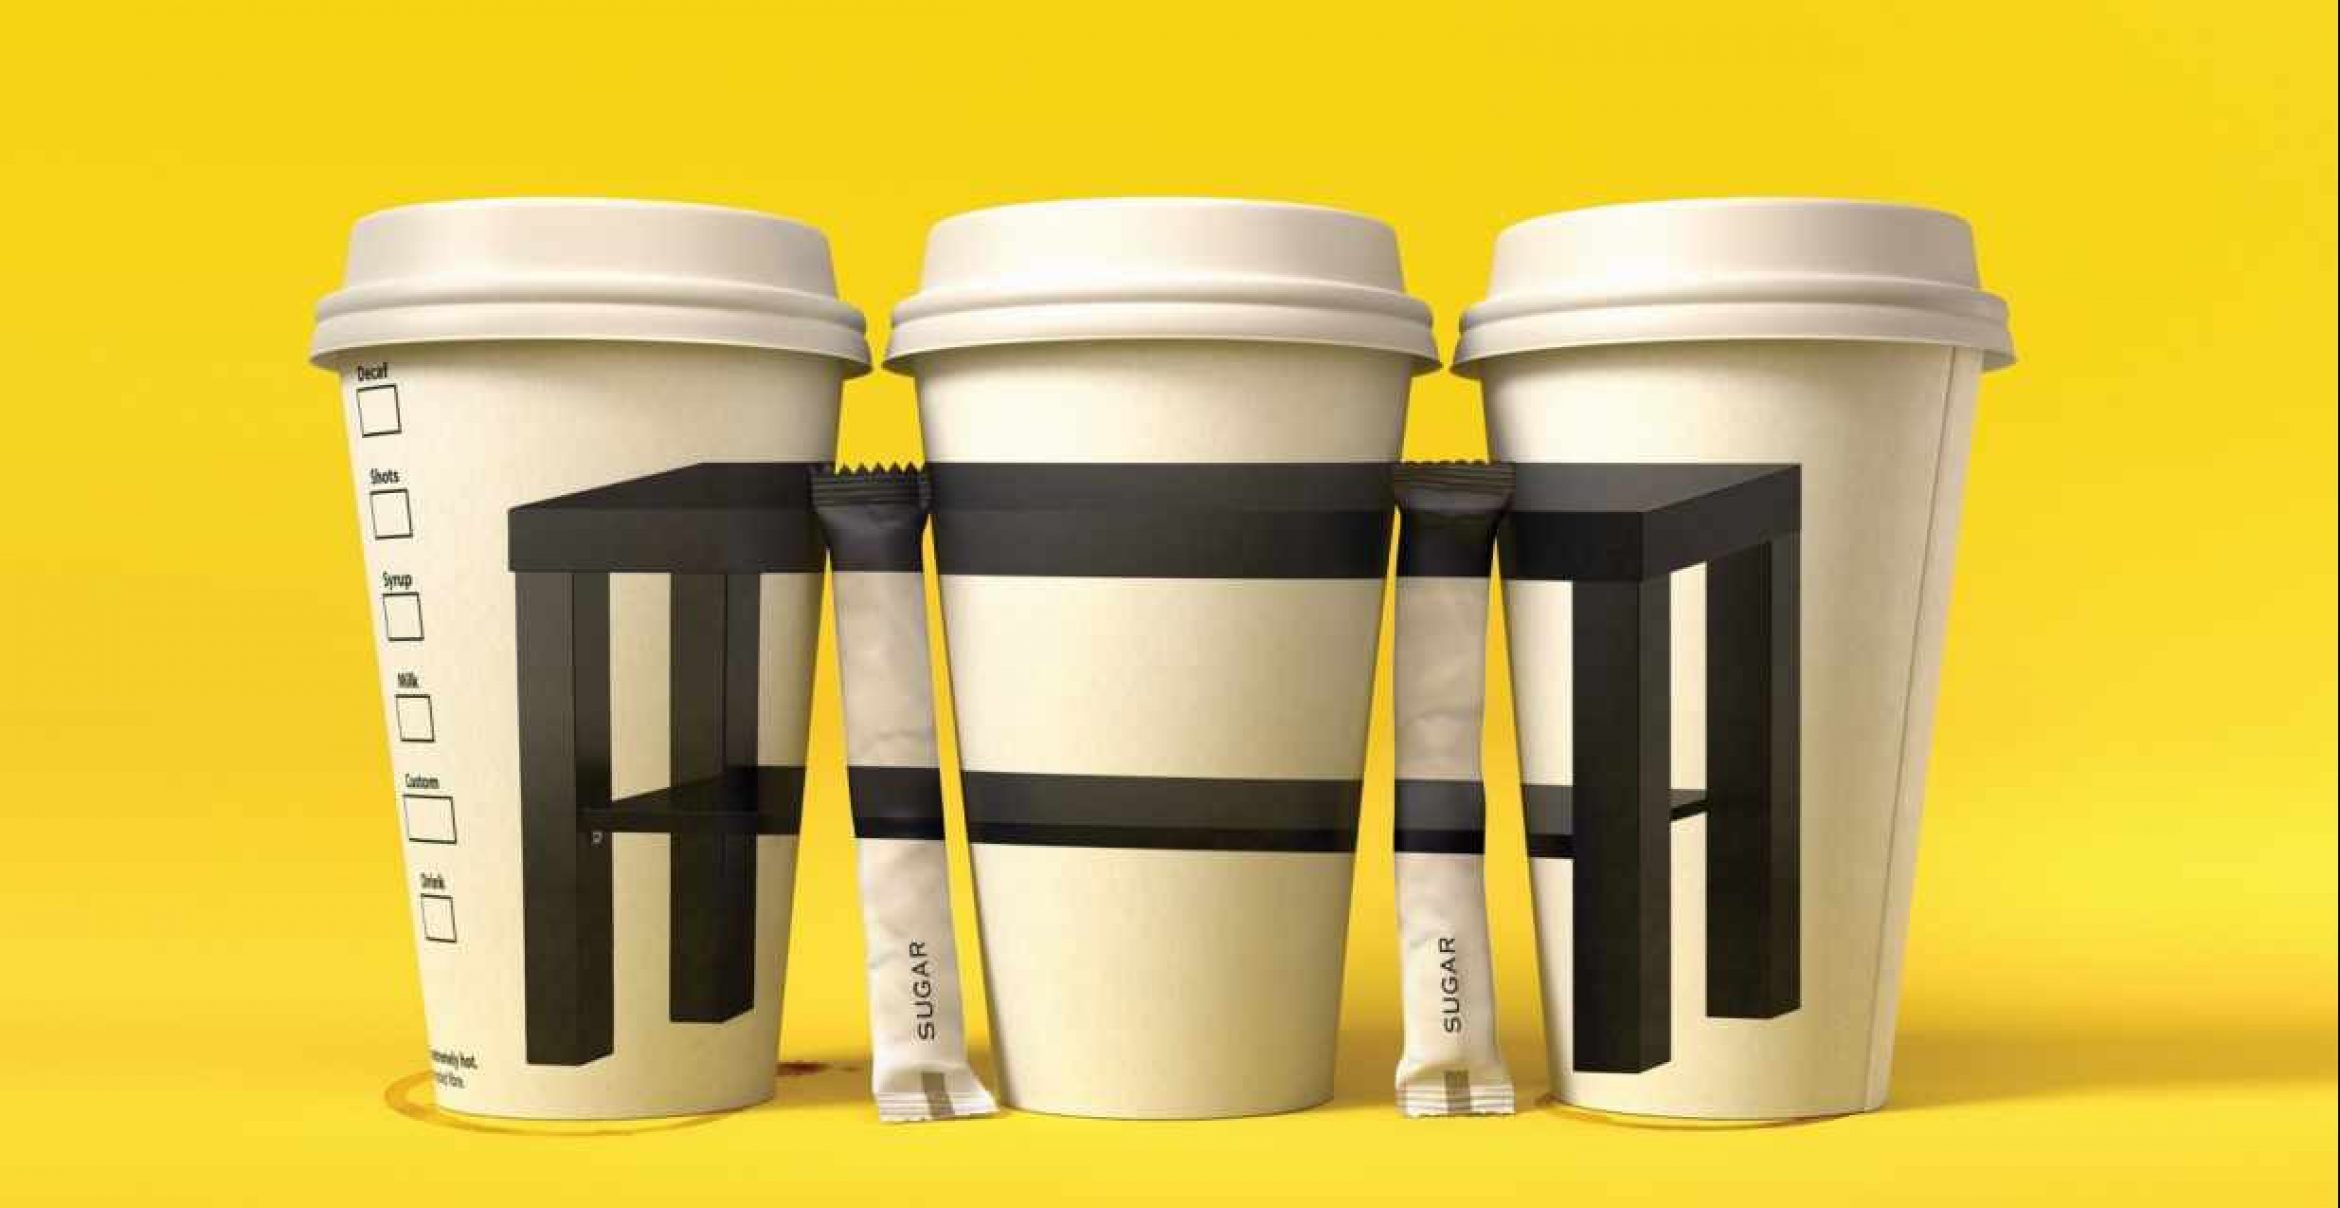 Geniale Werbekampagne: Ikea zeigt mit einfachen Motiven, wie erschwinglich ihre Produkte sind